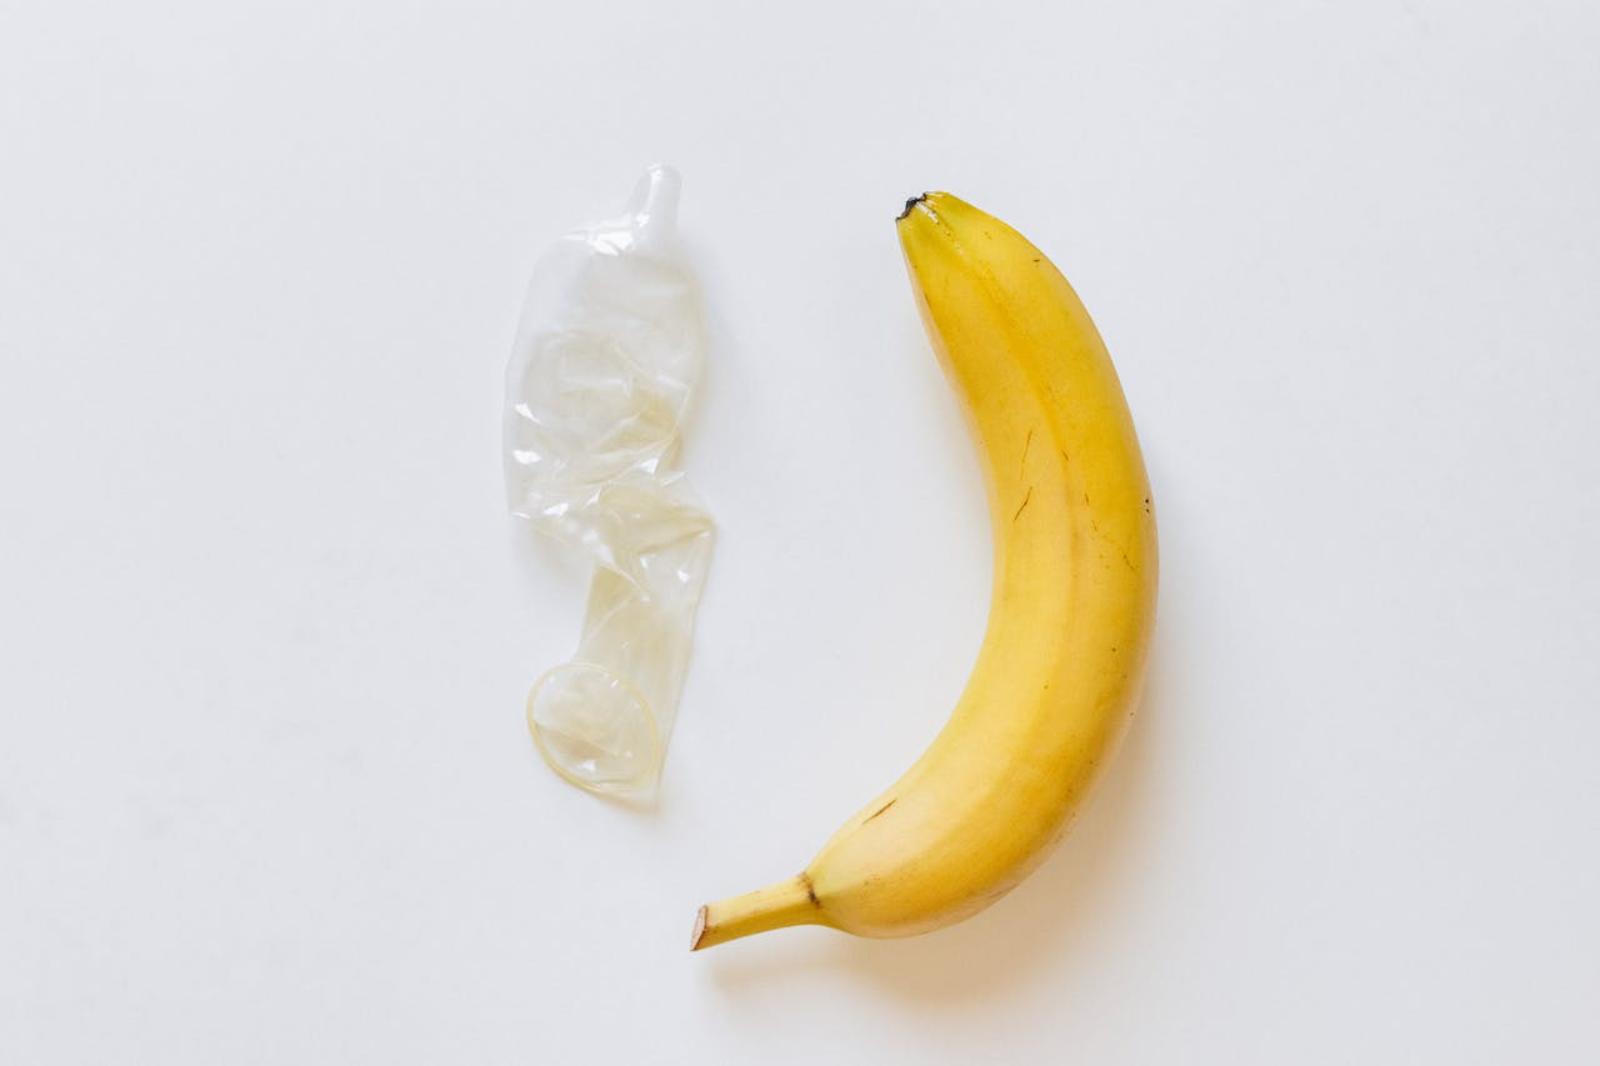 Banana and condom